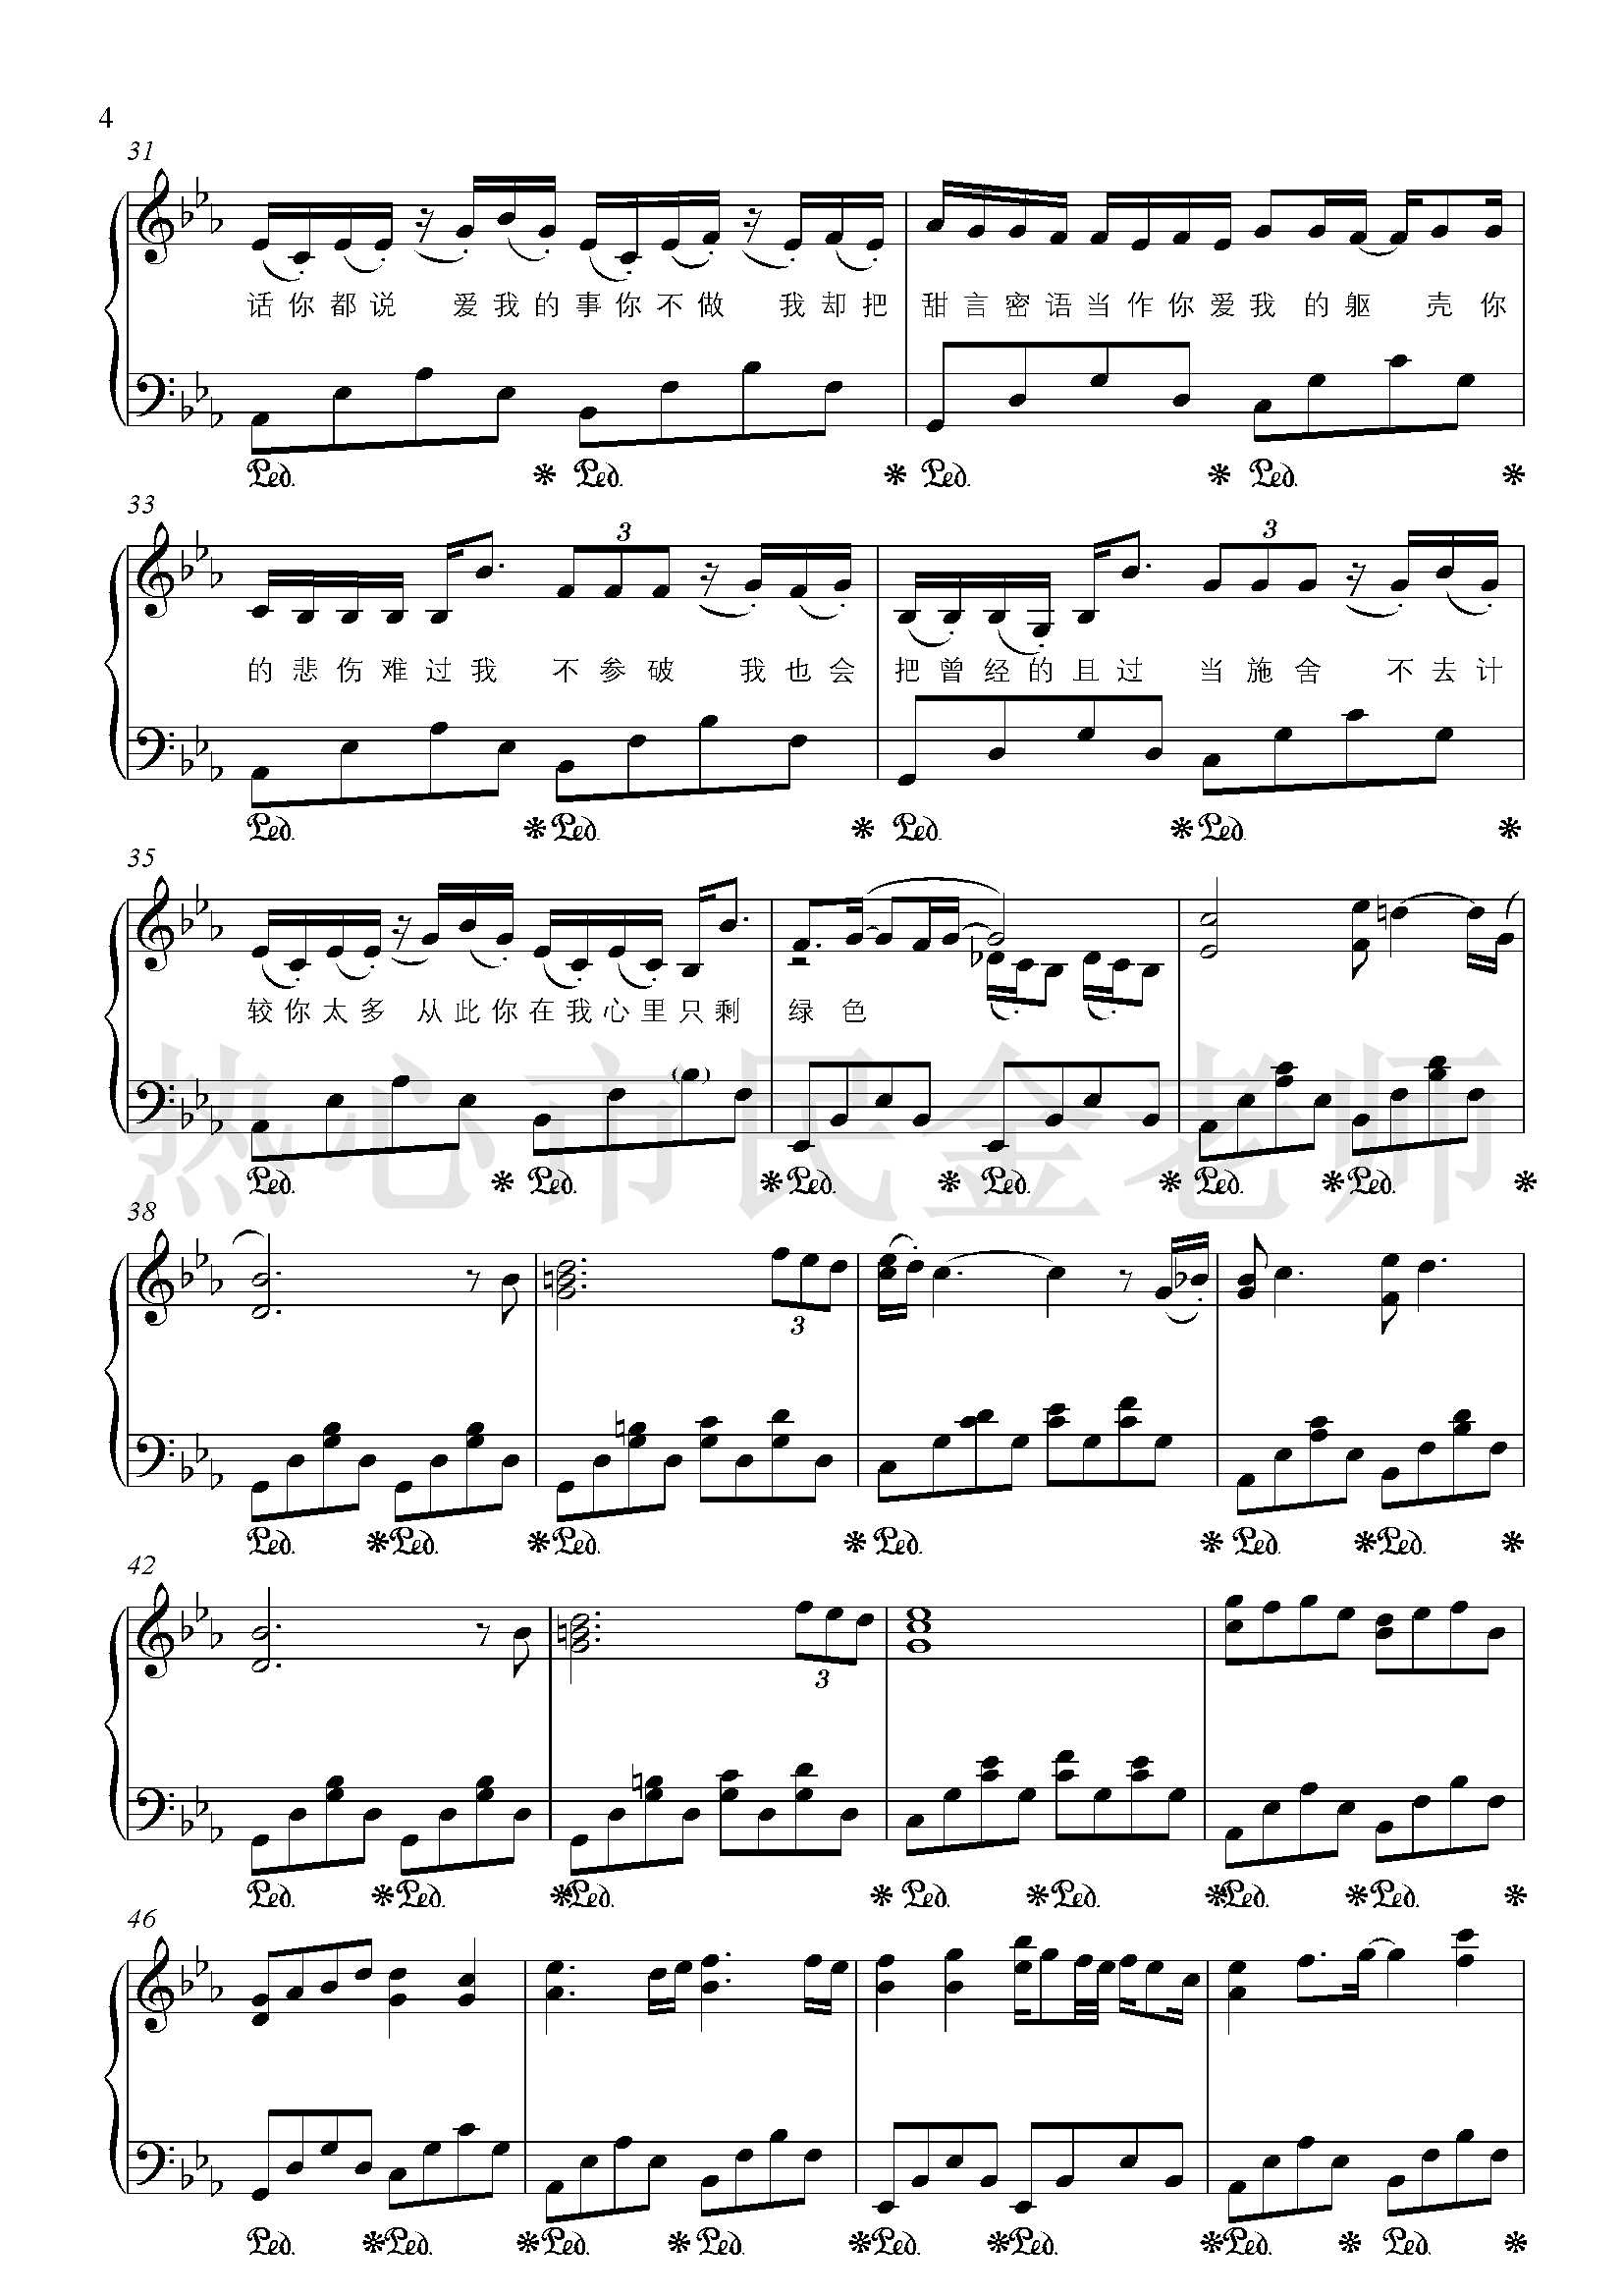 绿色钢琴谱-金老师独奏1904114